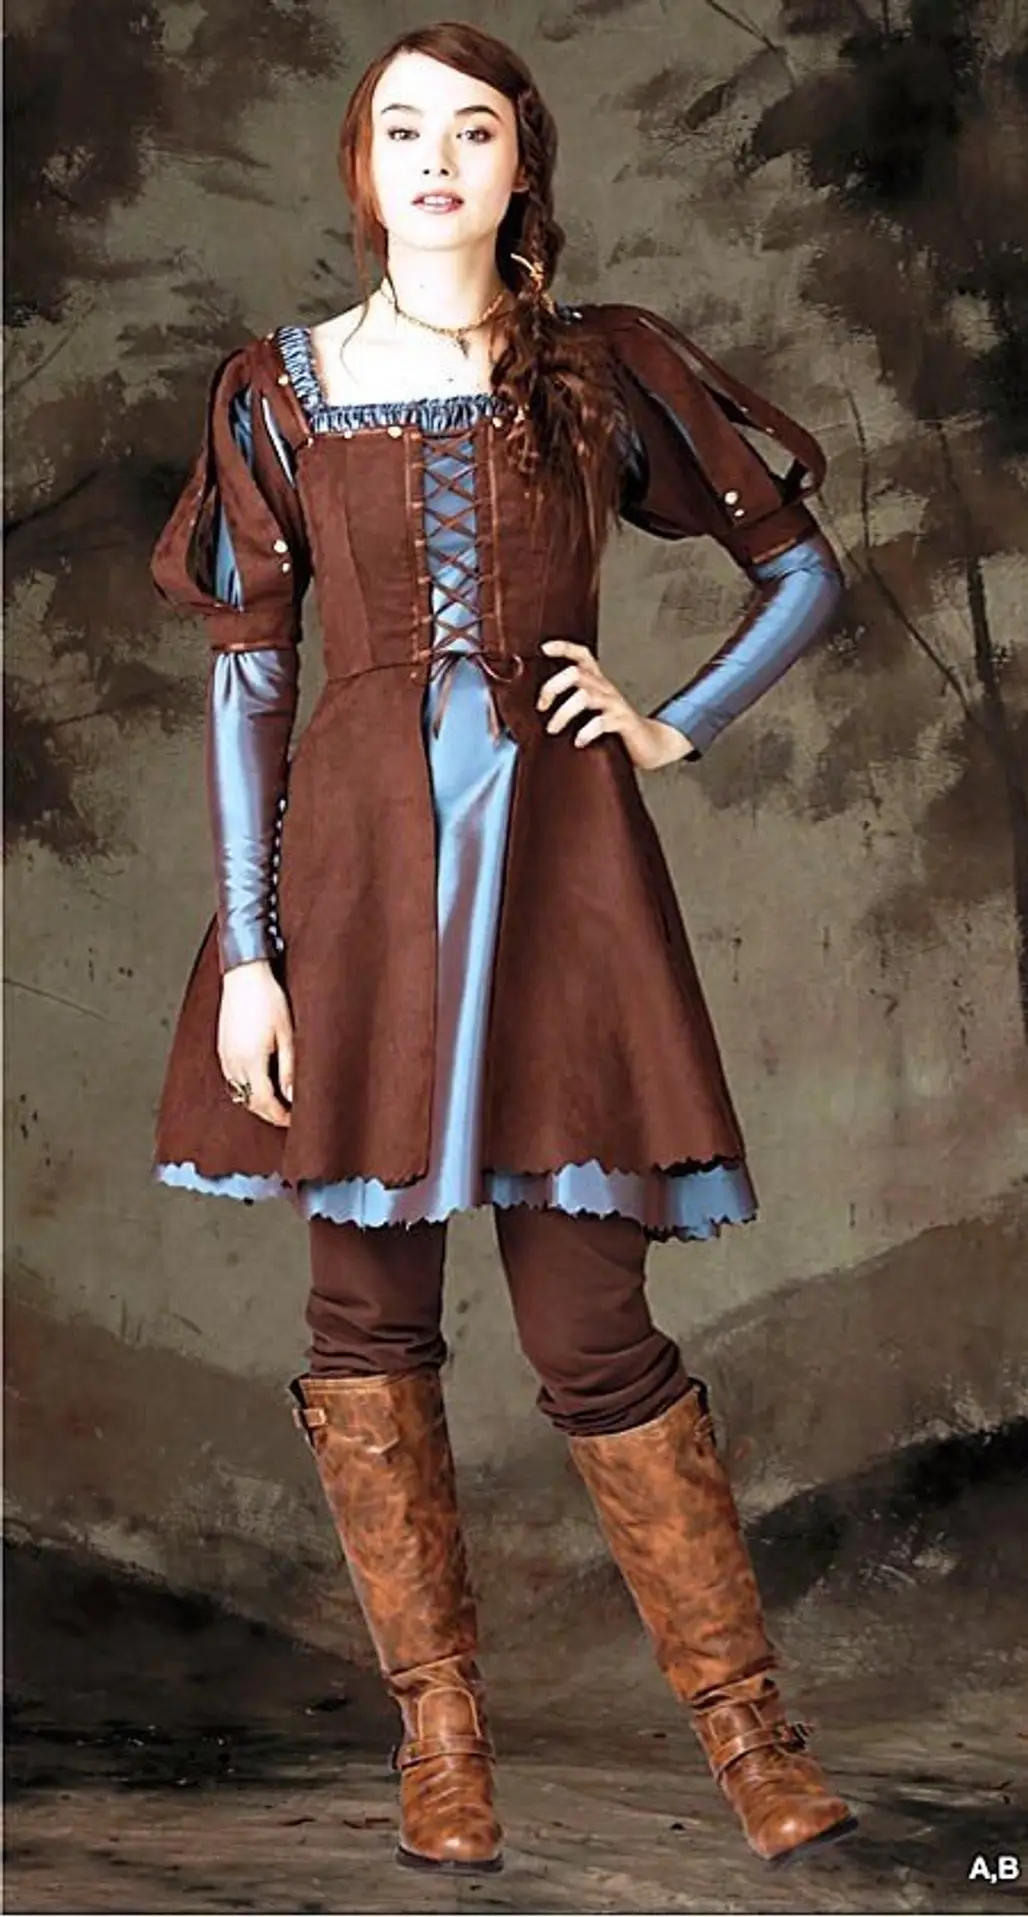 FAB Renaissance/Medieval Corset Bustier Costume PATTERN